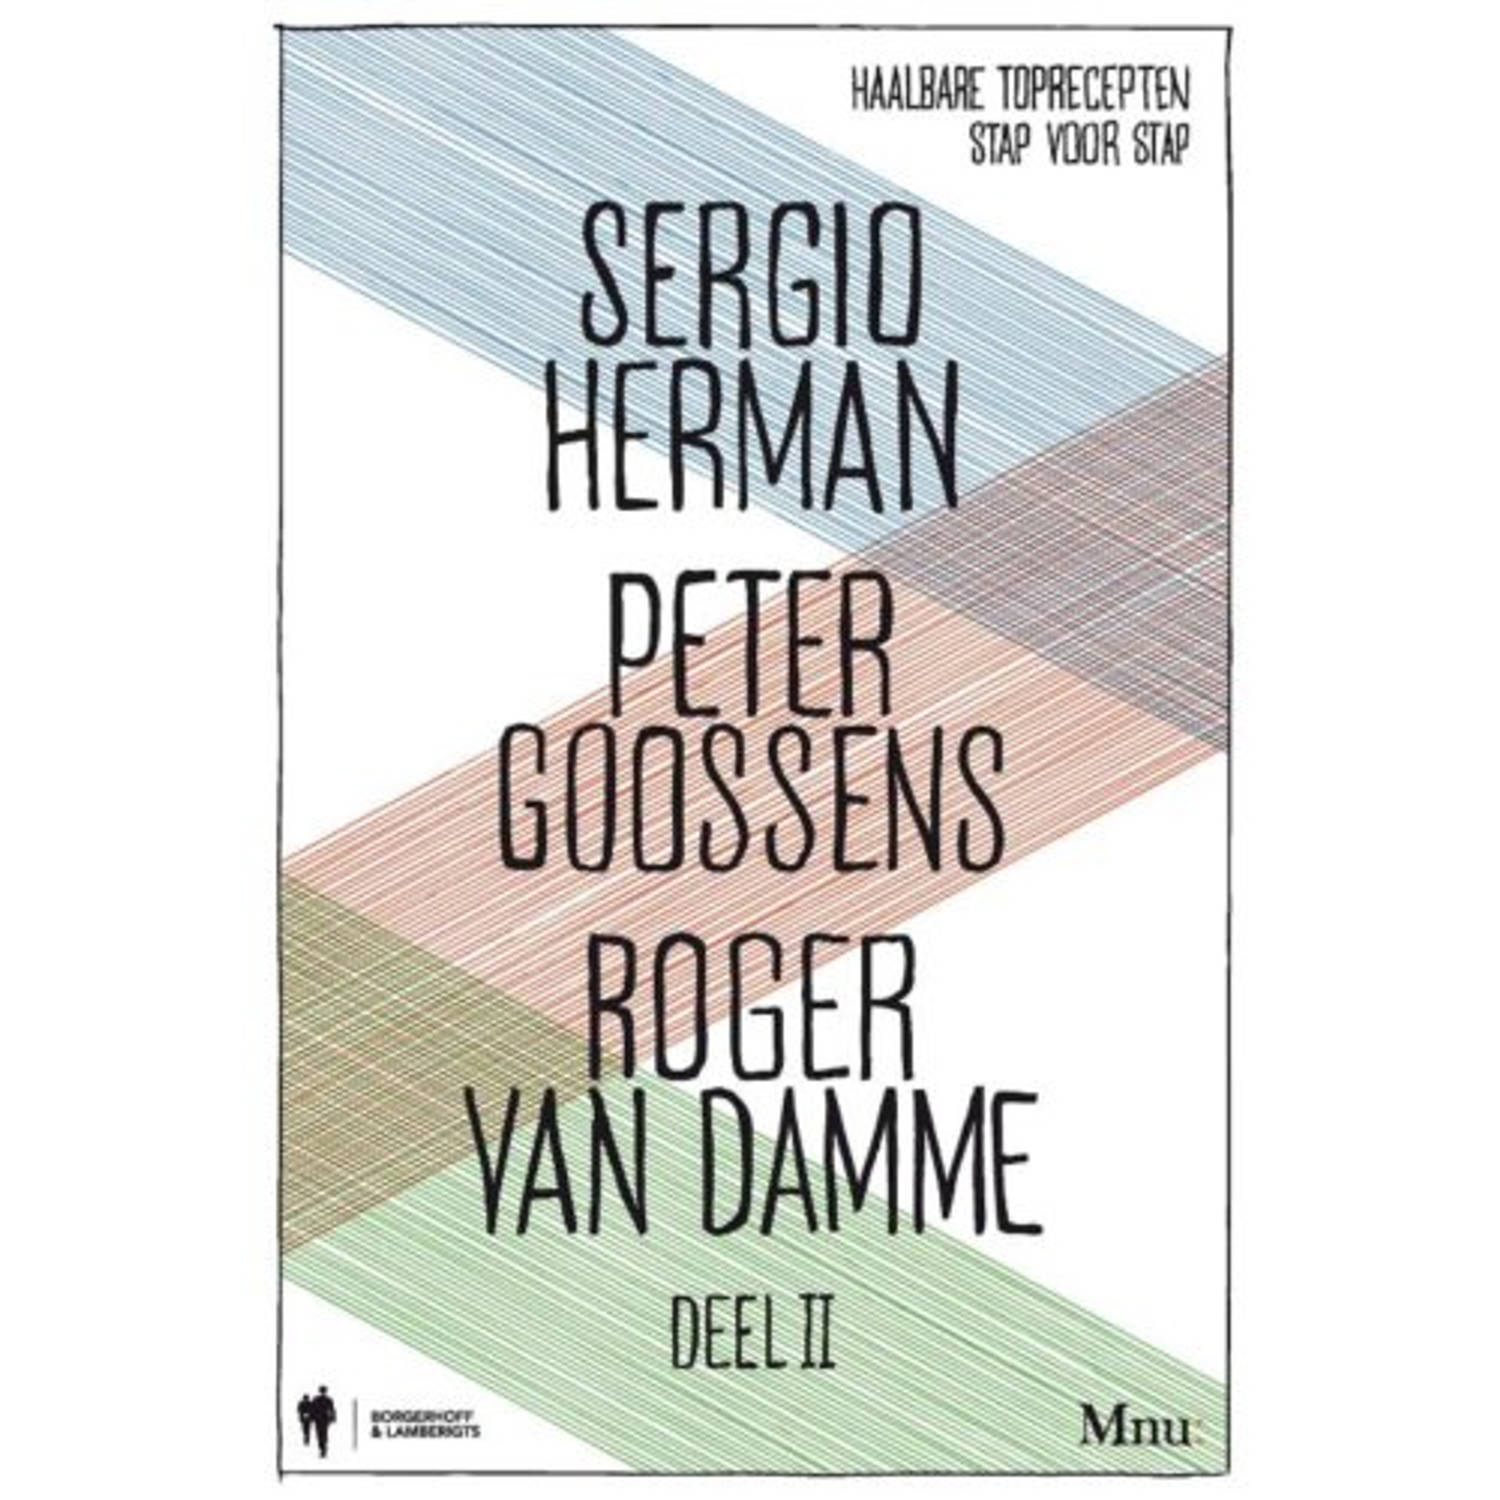 Sergio Herman, Peter Goossens & Roger Van Damme / - (ISBN:9789089312204)